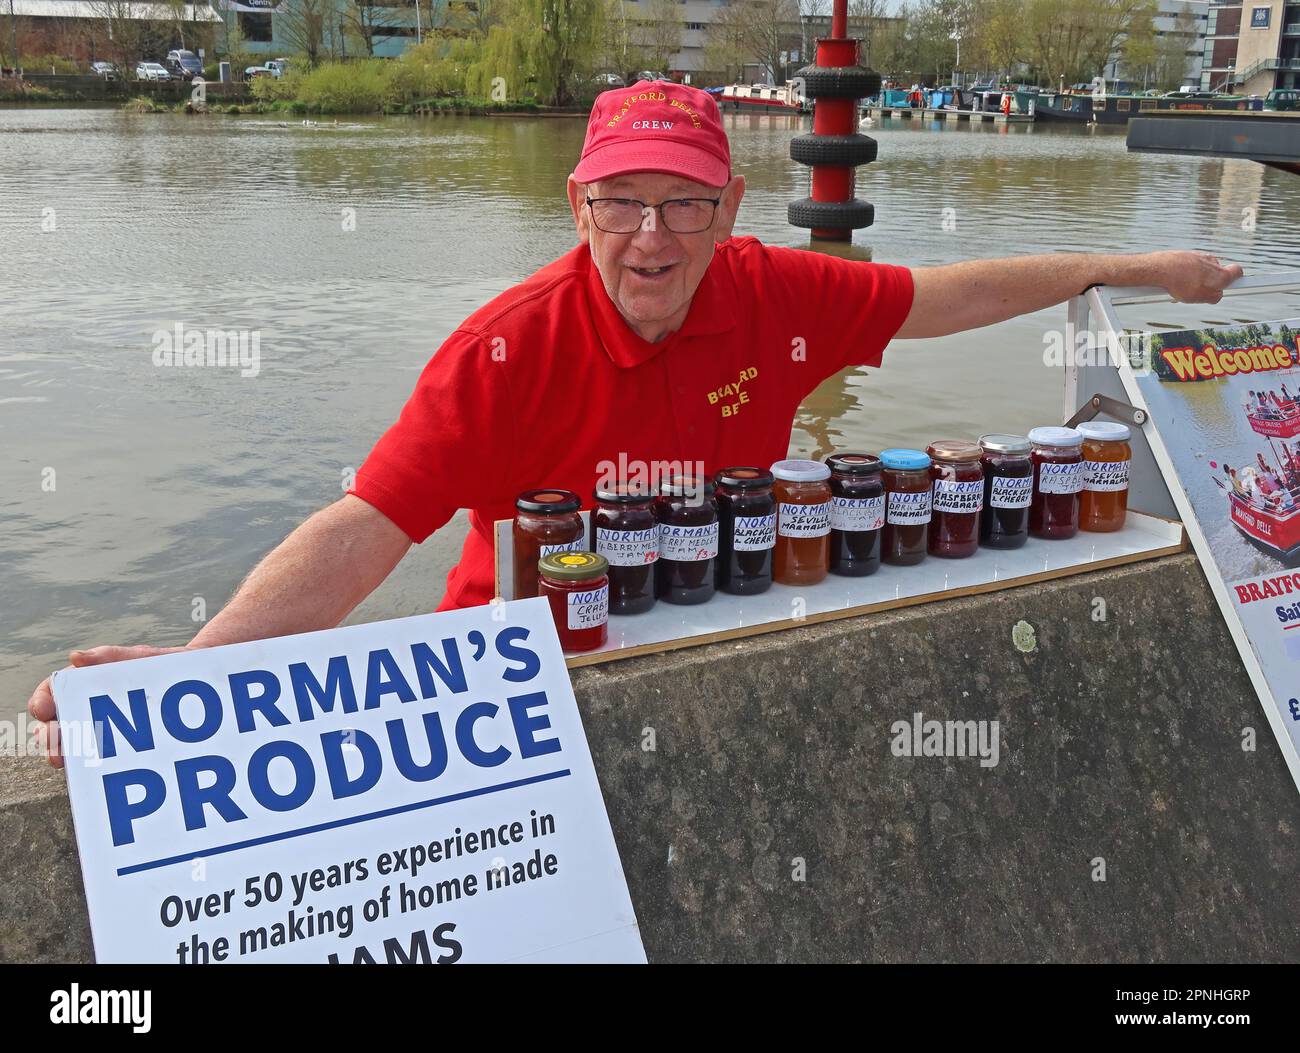 Normans Produce, Norman Scargill Lincoln Jam Maker depuis plus de 50 ans travaillant sur le Brayford Belle, Lincoln, Lincolnshire, Angleterre, Royaume-Uni, LN1 1YX Banque D'Images